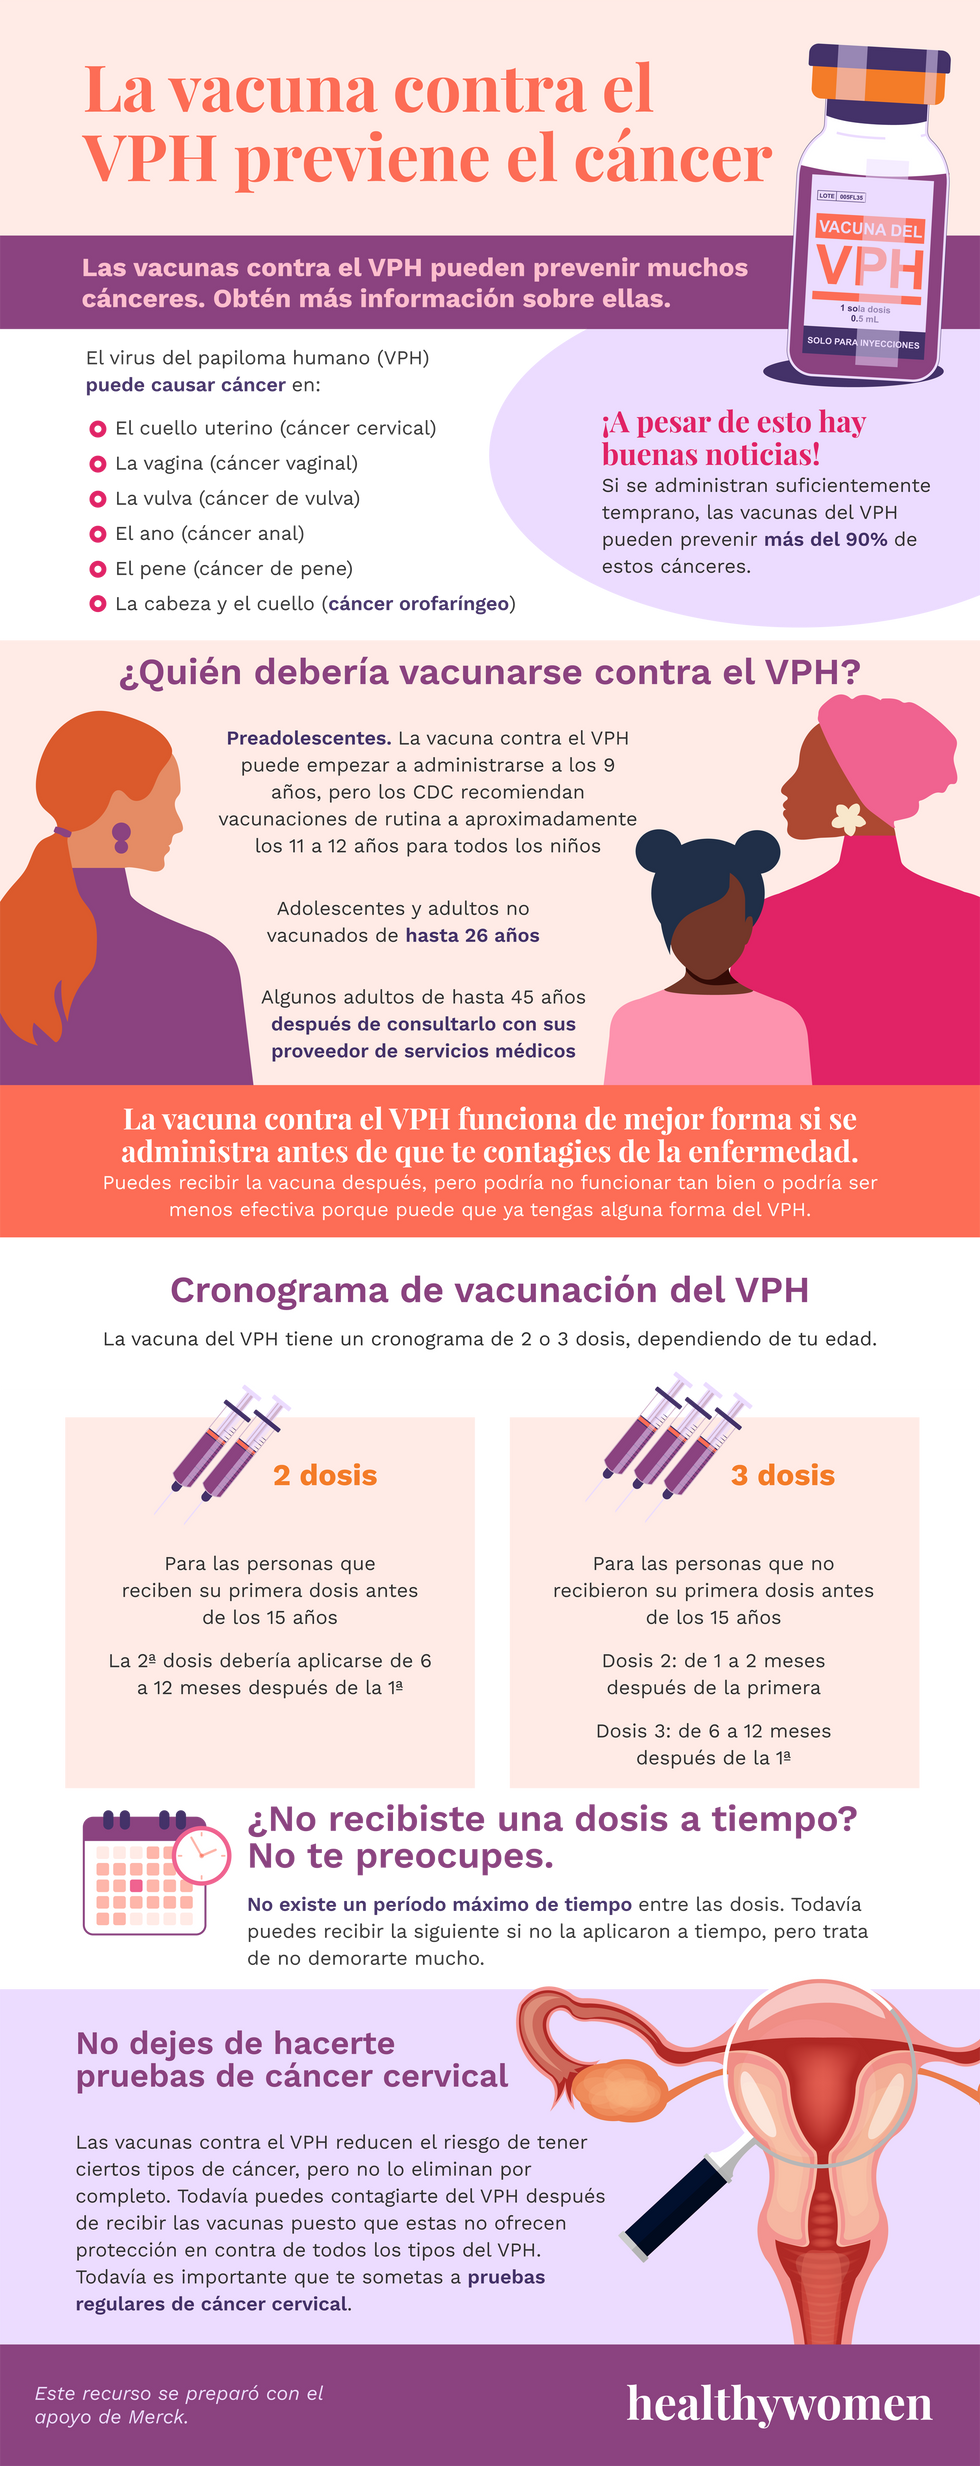 Infographic La vacuna contra el VPH previene el c\u00e1ncer. Click the image to open the PDF